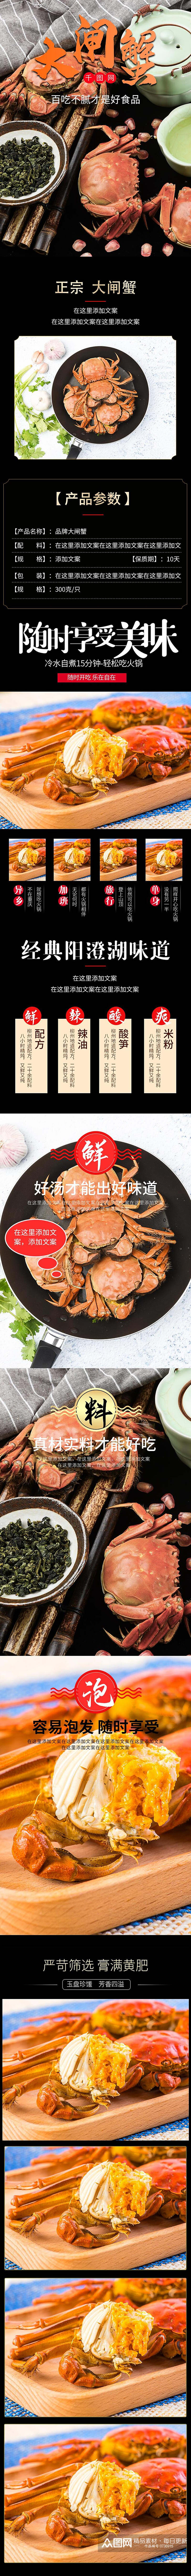 正宗大闸蟹食品宣传电商详情页素材